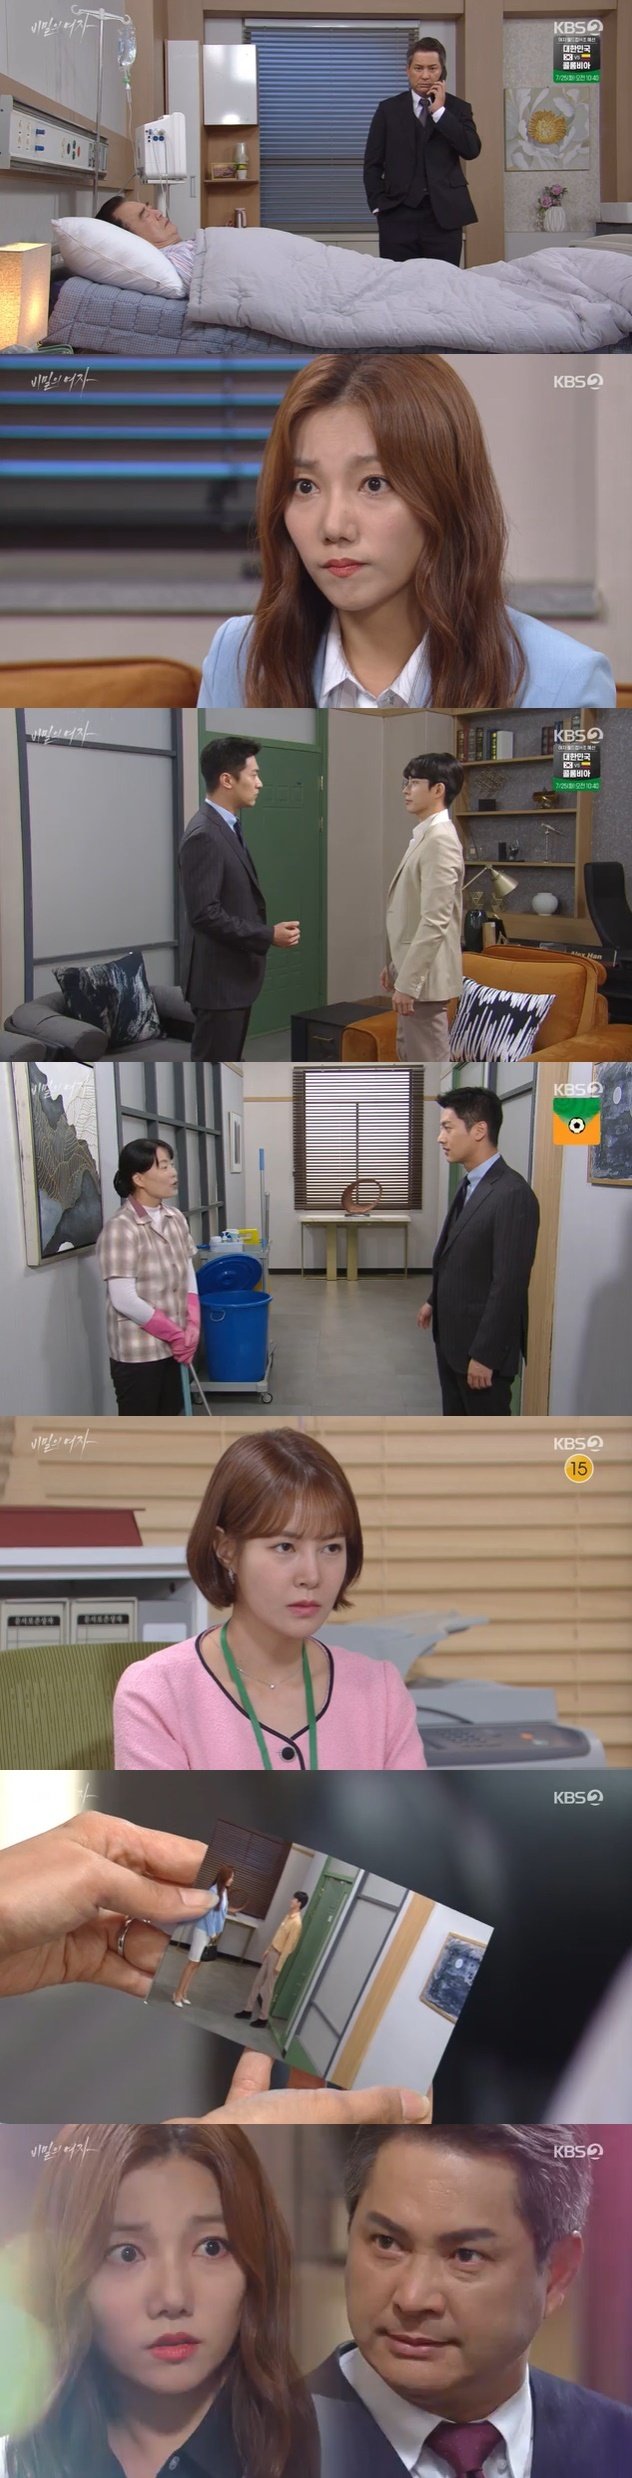 KBS 2TV '비밀의 여자' 캡처